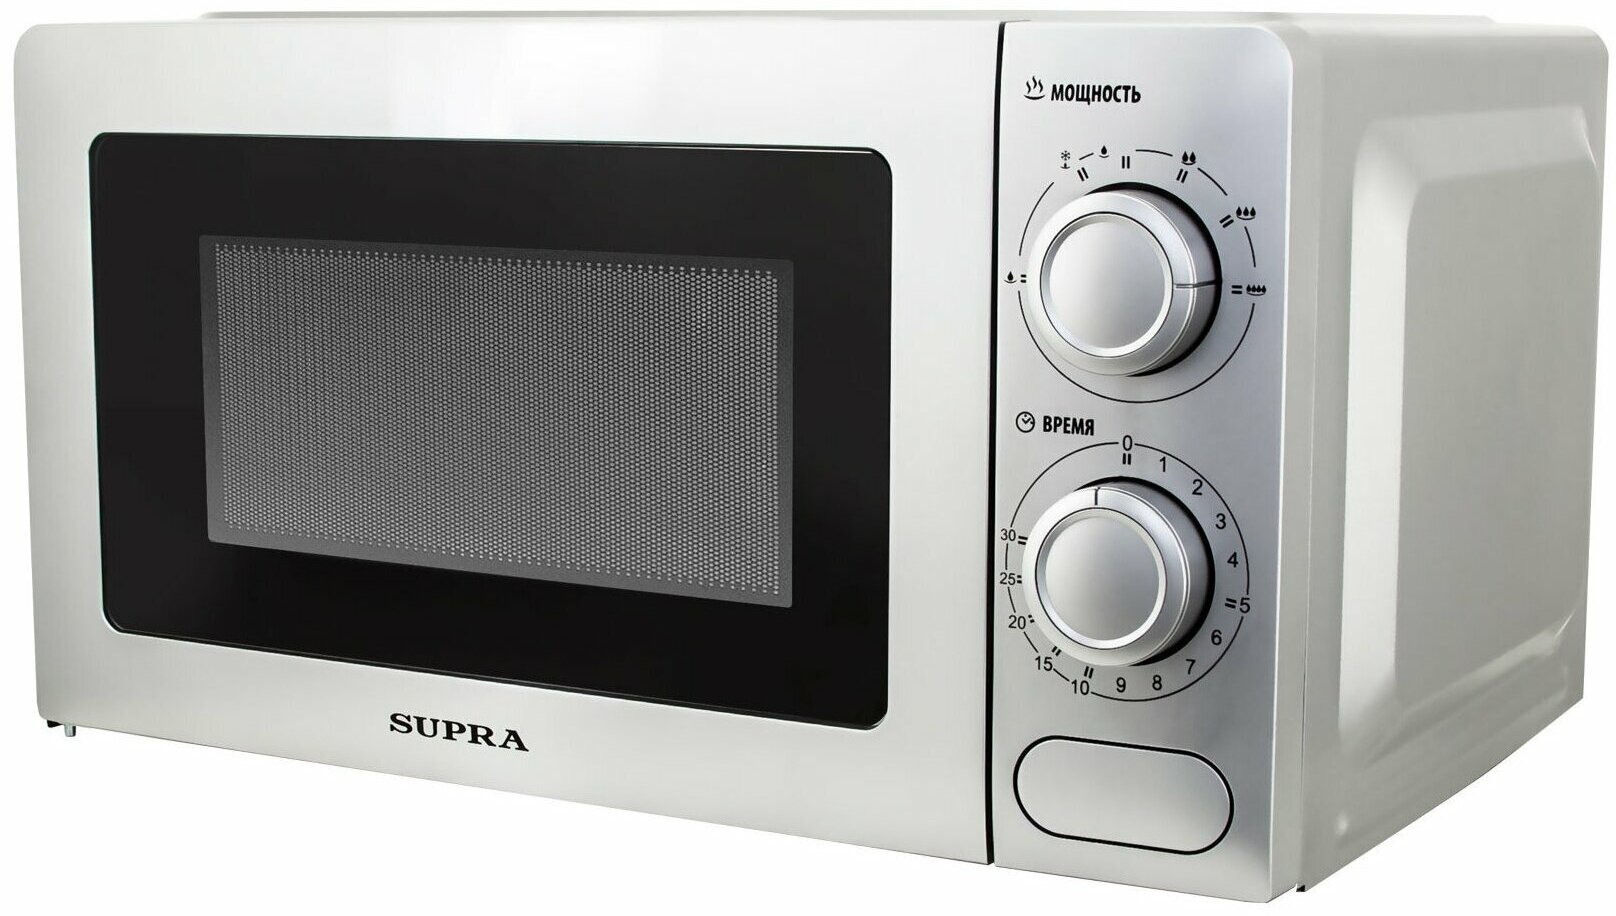 Микроволновая печь SUPRA , белый - фото №5